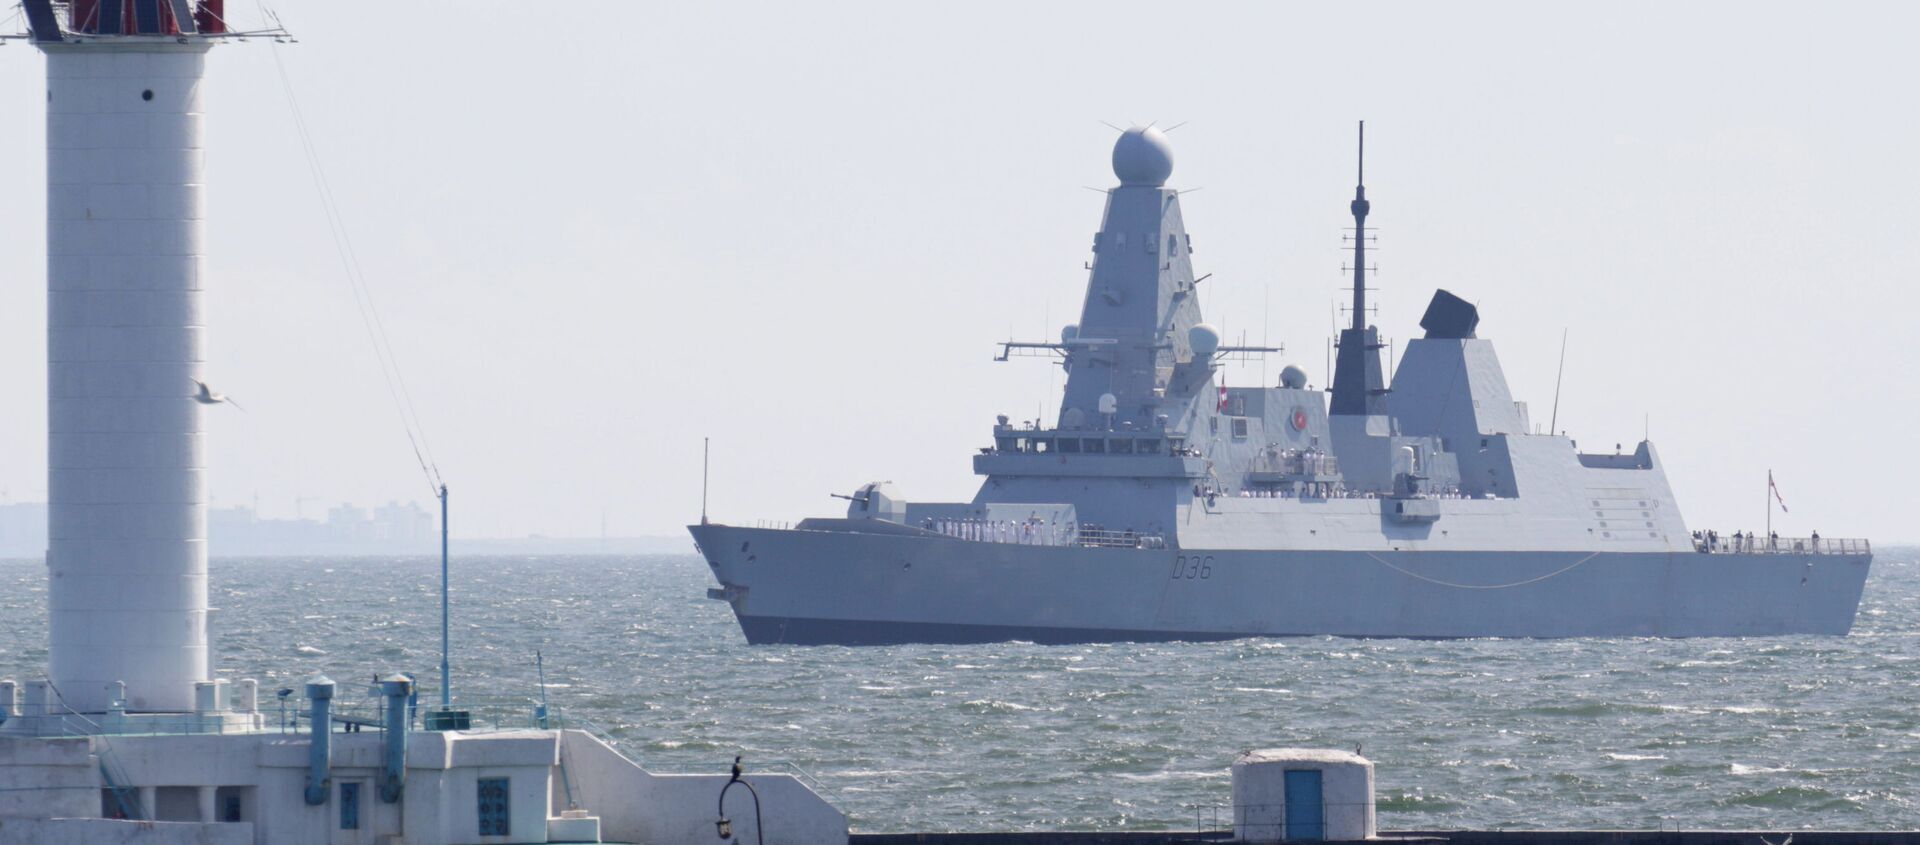 British Royal Navy's Type 45 destroyer HMS Defender arrives at the Black Sea port of Odessa, Ukraine June 18, 2021. Picture taken June 18, 2021 - Sputnik International, 1920, 24.06.2021